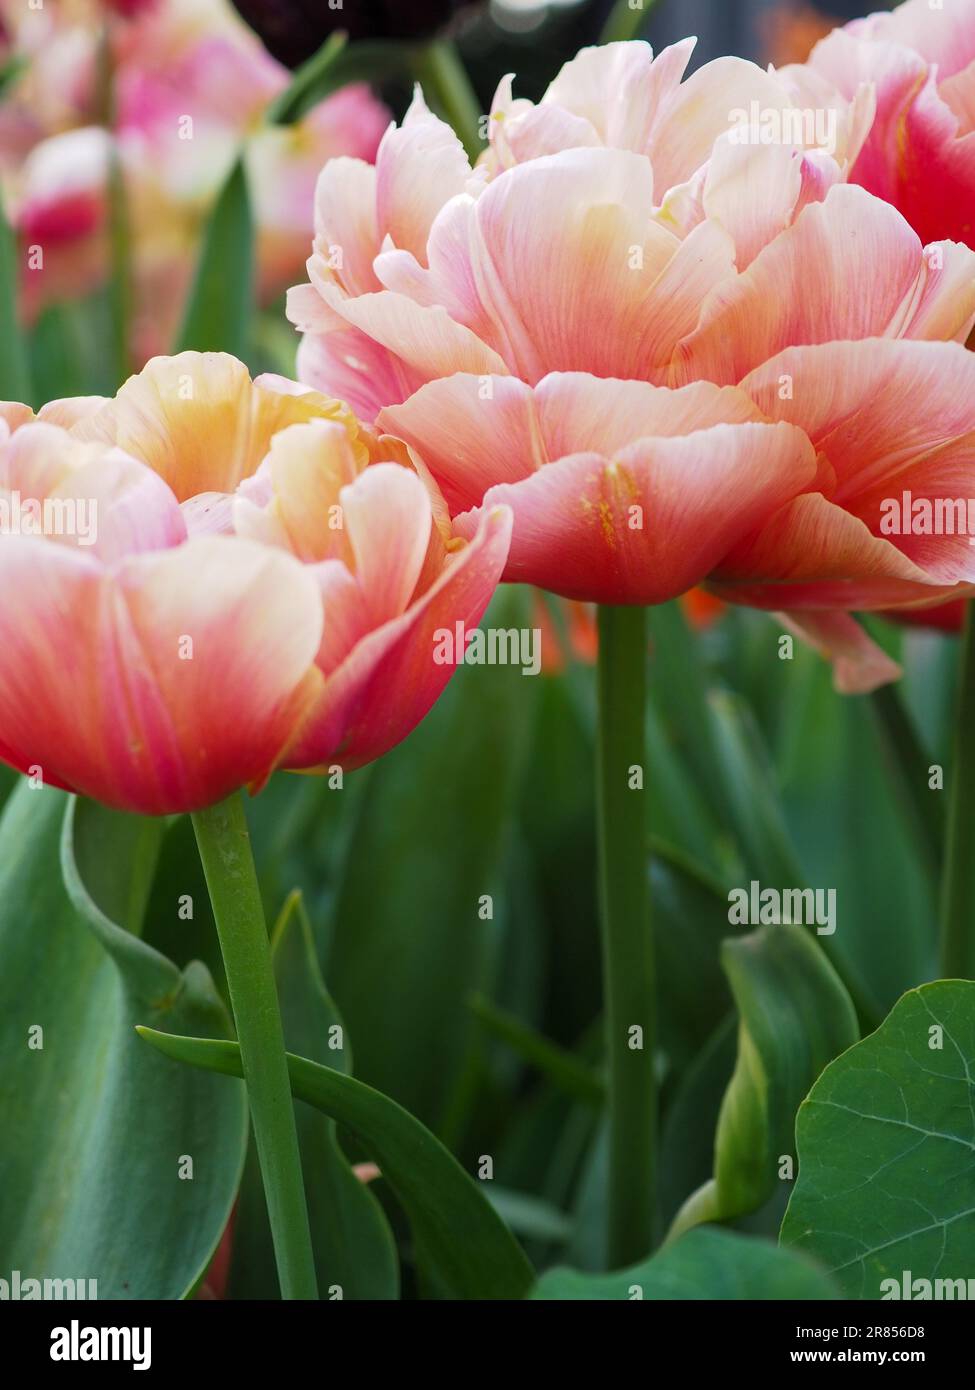 Primo piano del fiore di Tulip "Copper Image" che mostra i loro forti steli e i fiori a doppia peonia di arancia e rosa con petali multicolori Foto Stock